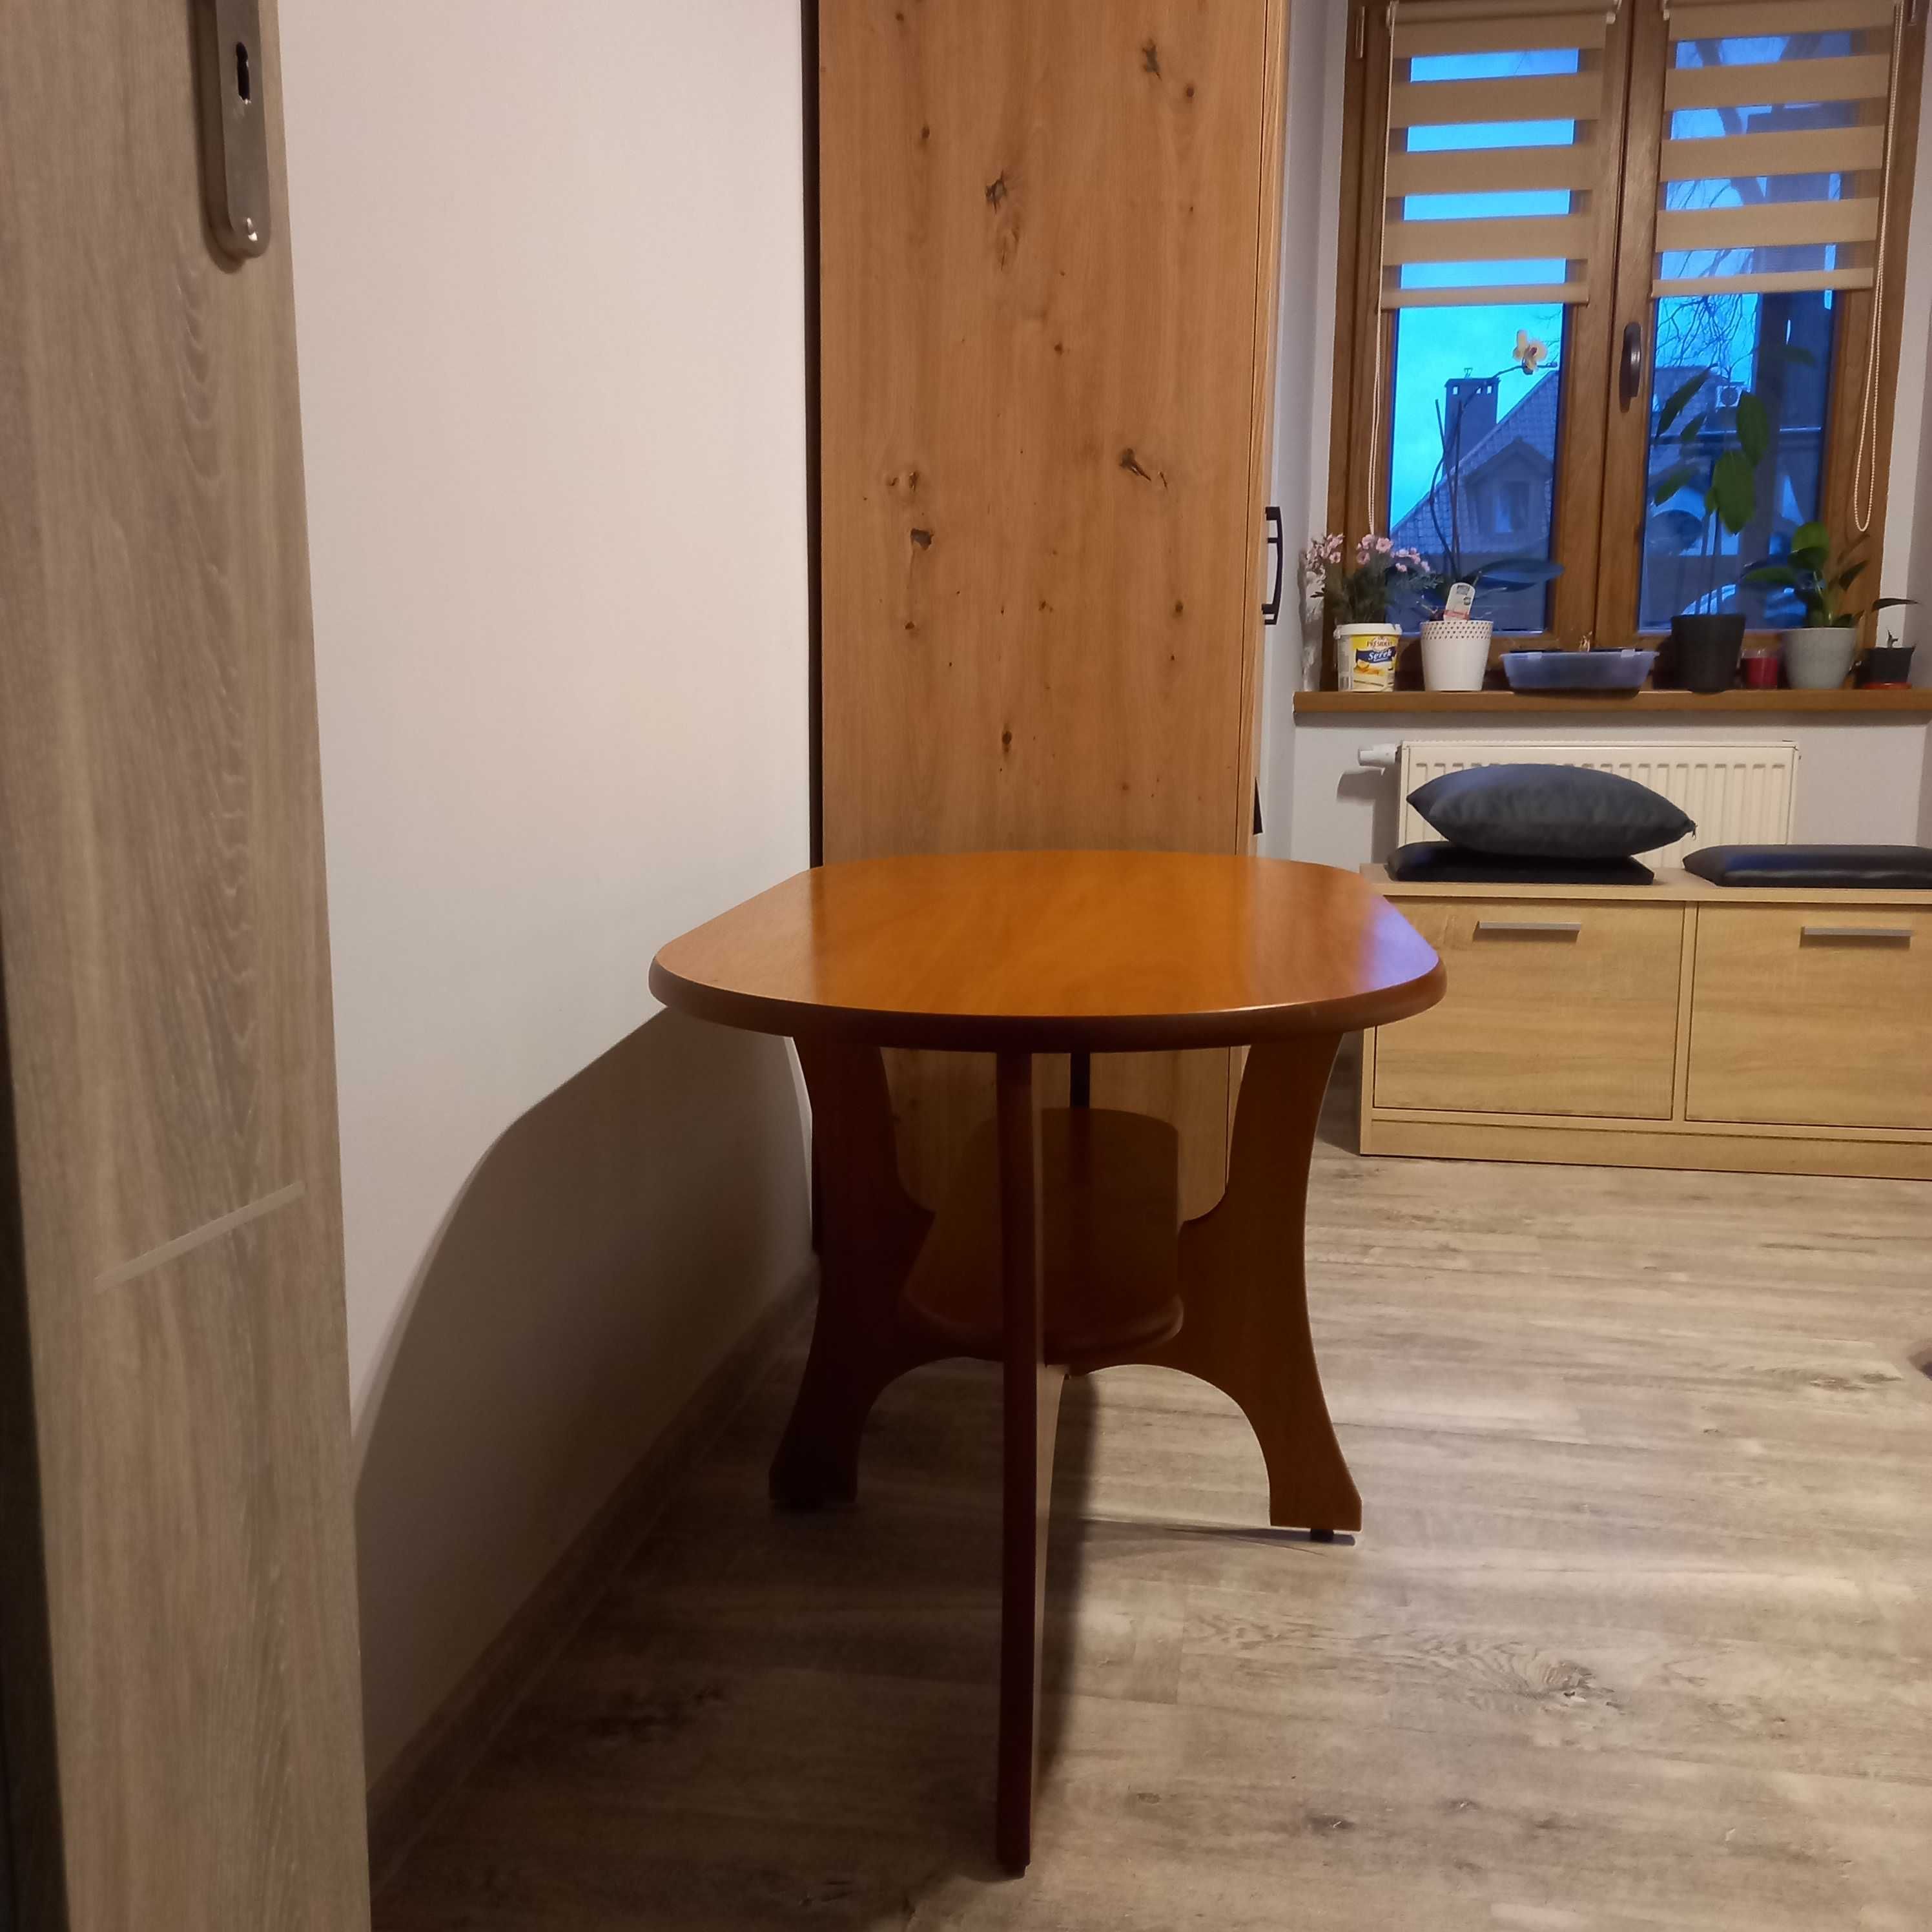 Ława pokojowa, stolik kawowy, drewniana ława